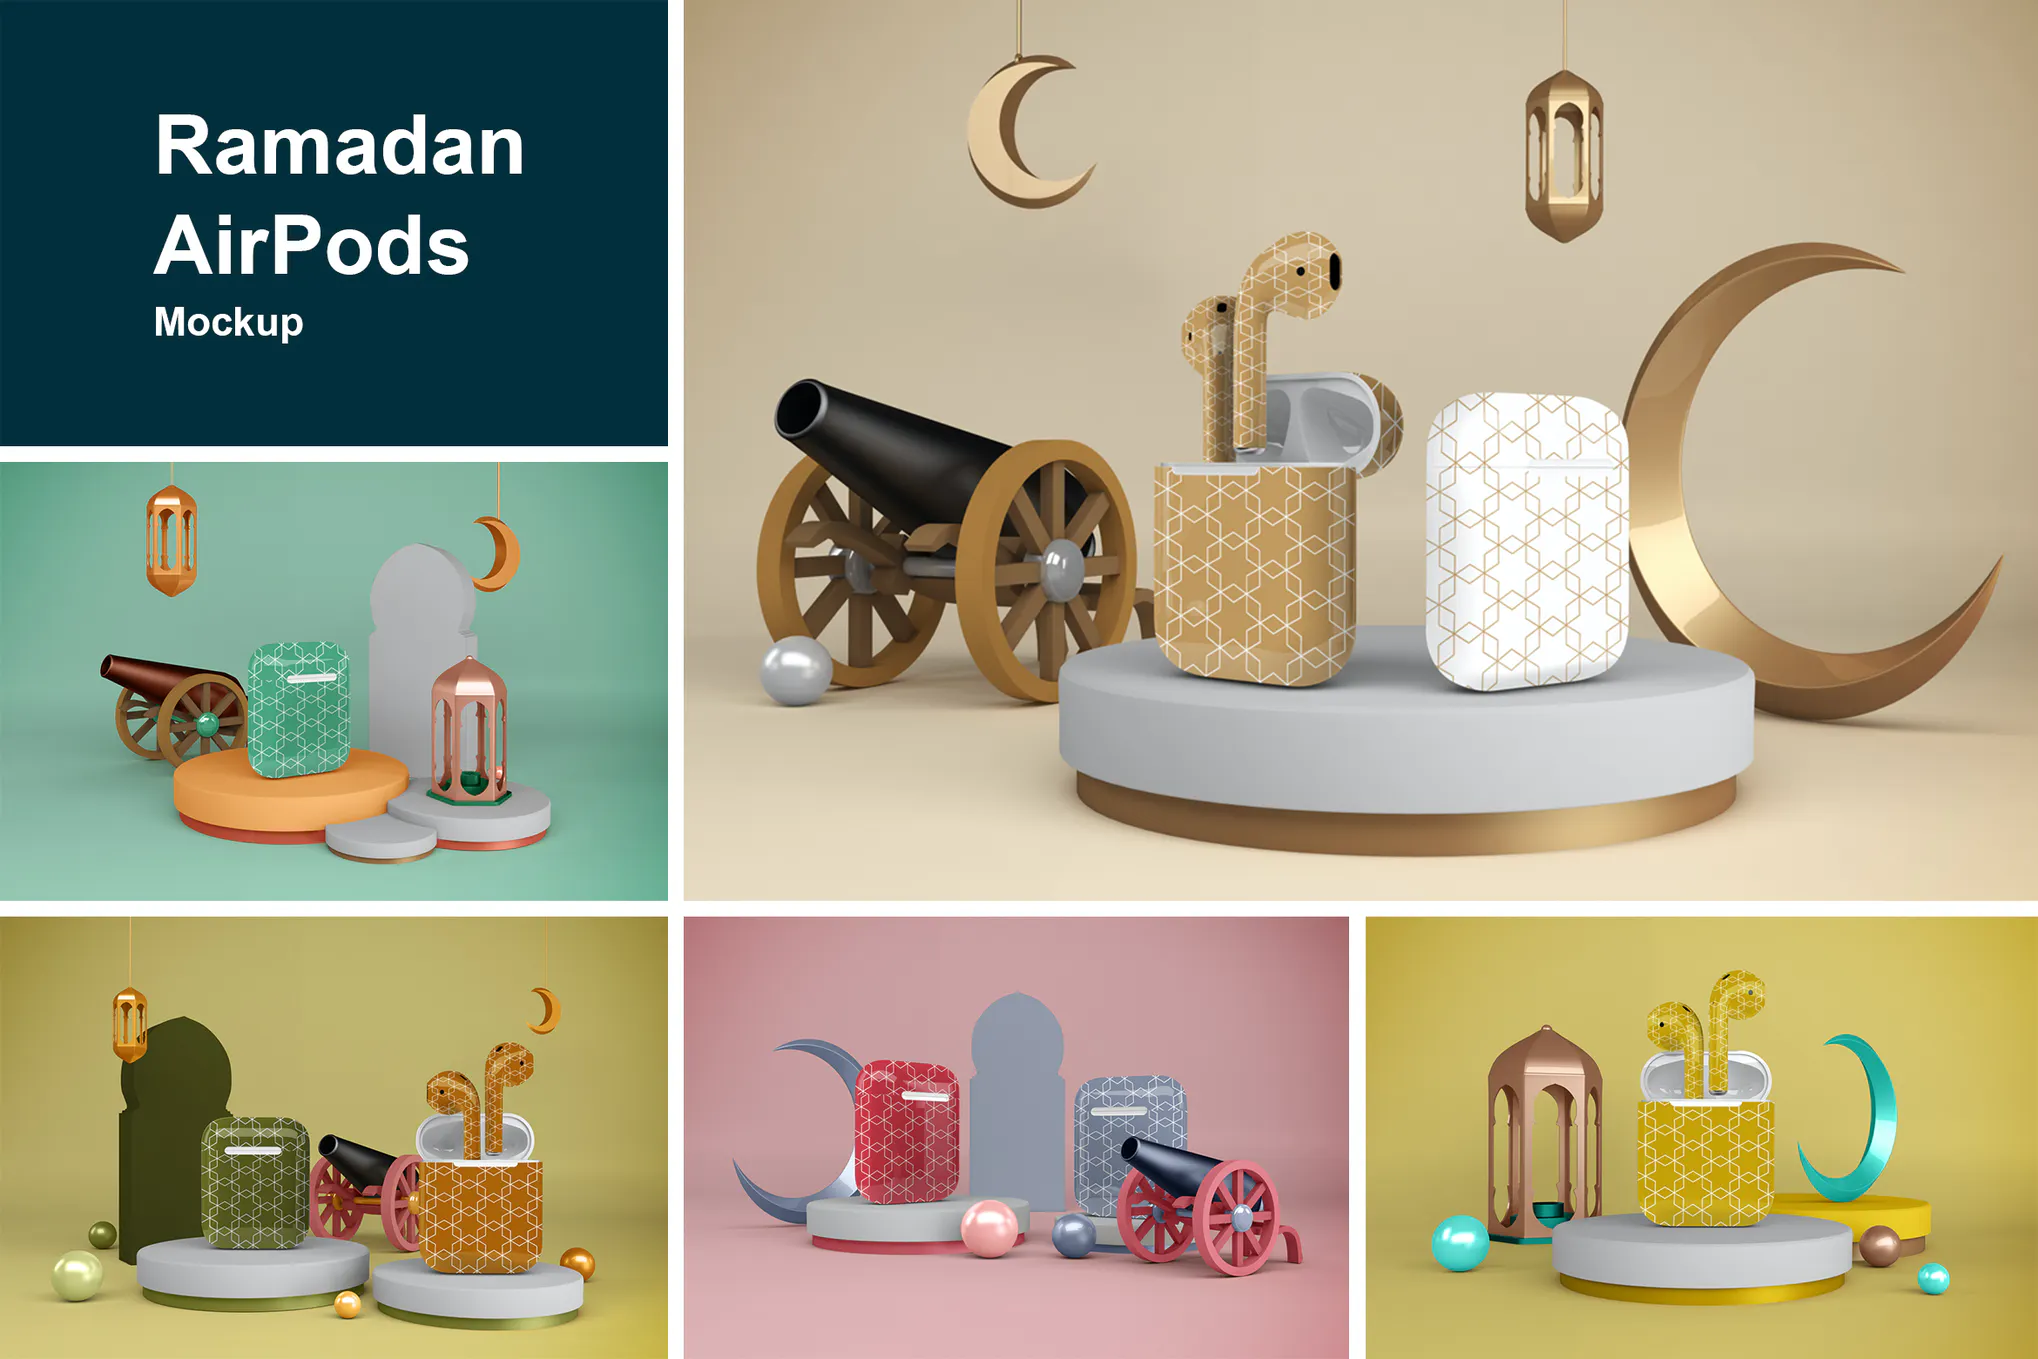 دانلود فایل لایه باز Ramadan AirPods